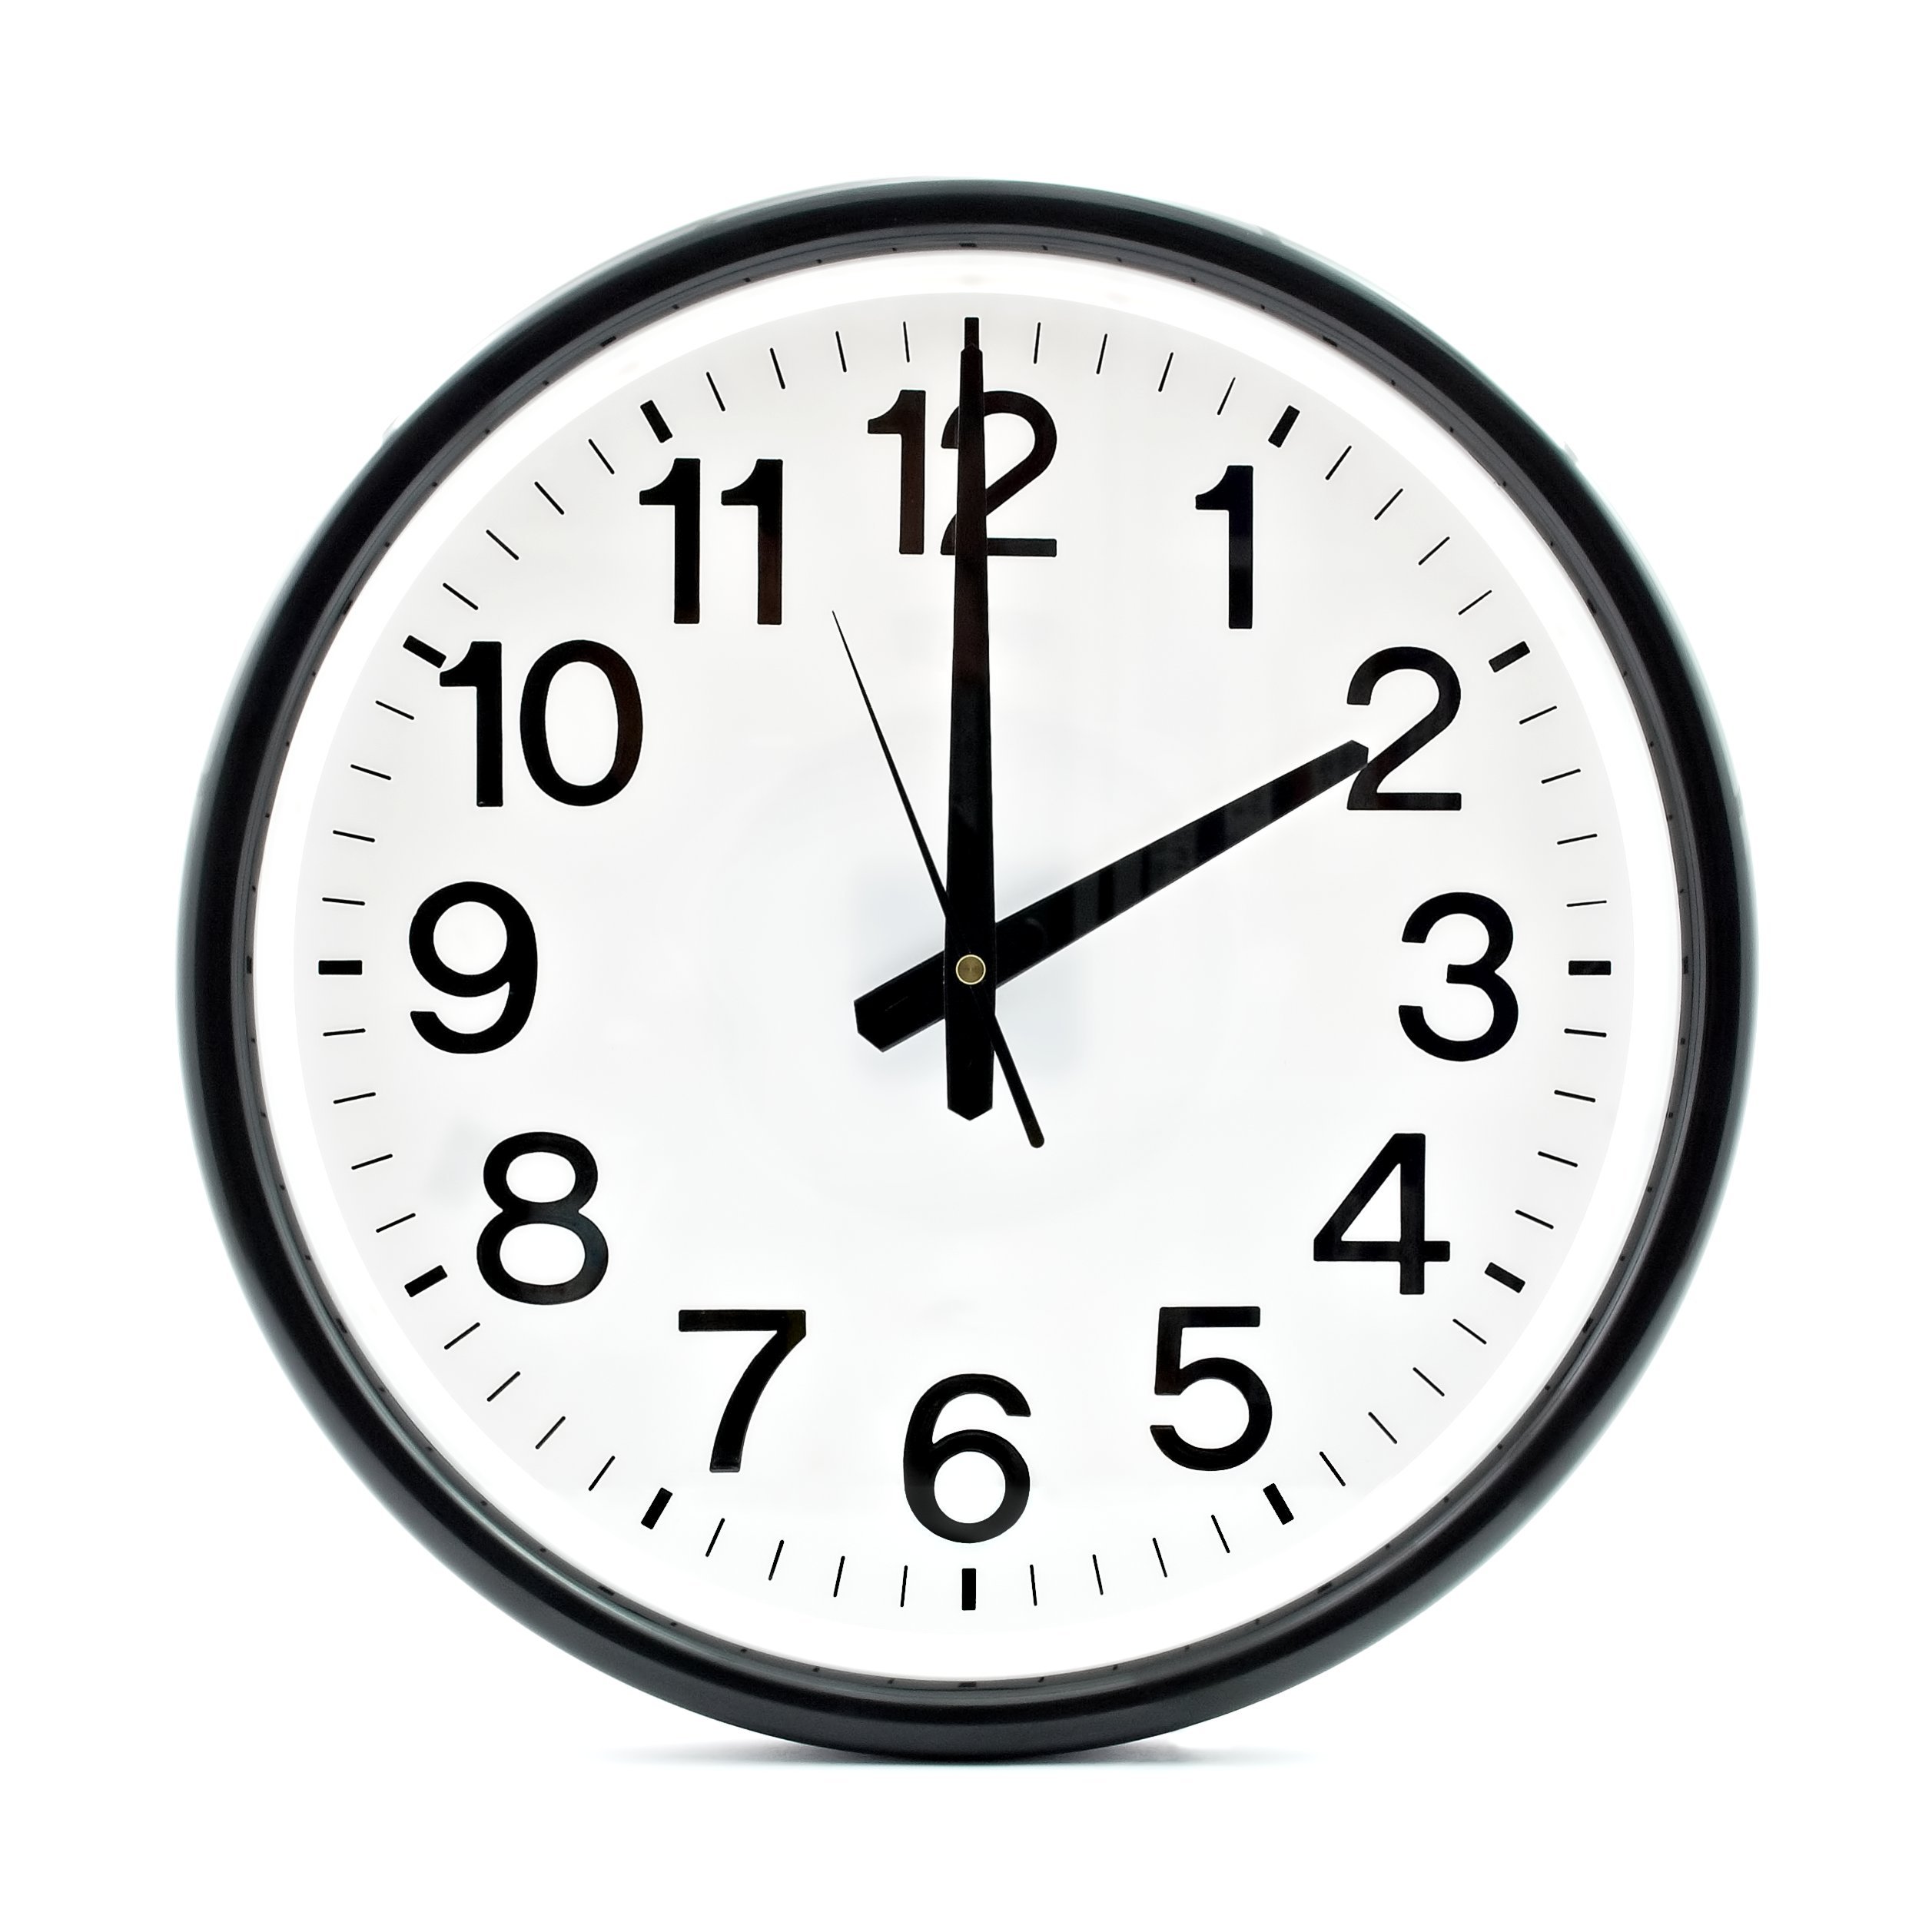 14 25 на часах. Часы 2 часа. Часы показывают 14:00. Часы два часа дня. Часы показывают 2 часа.